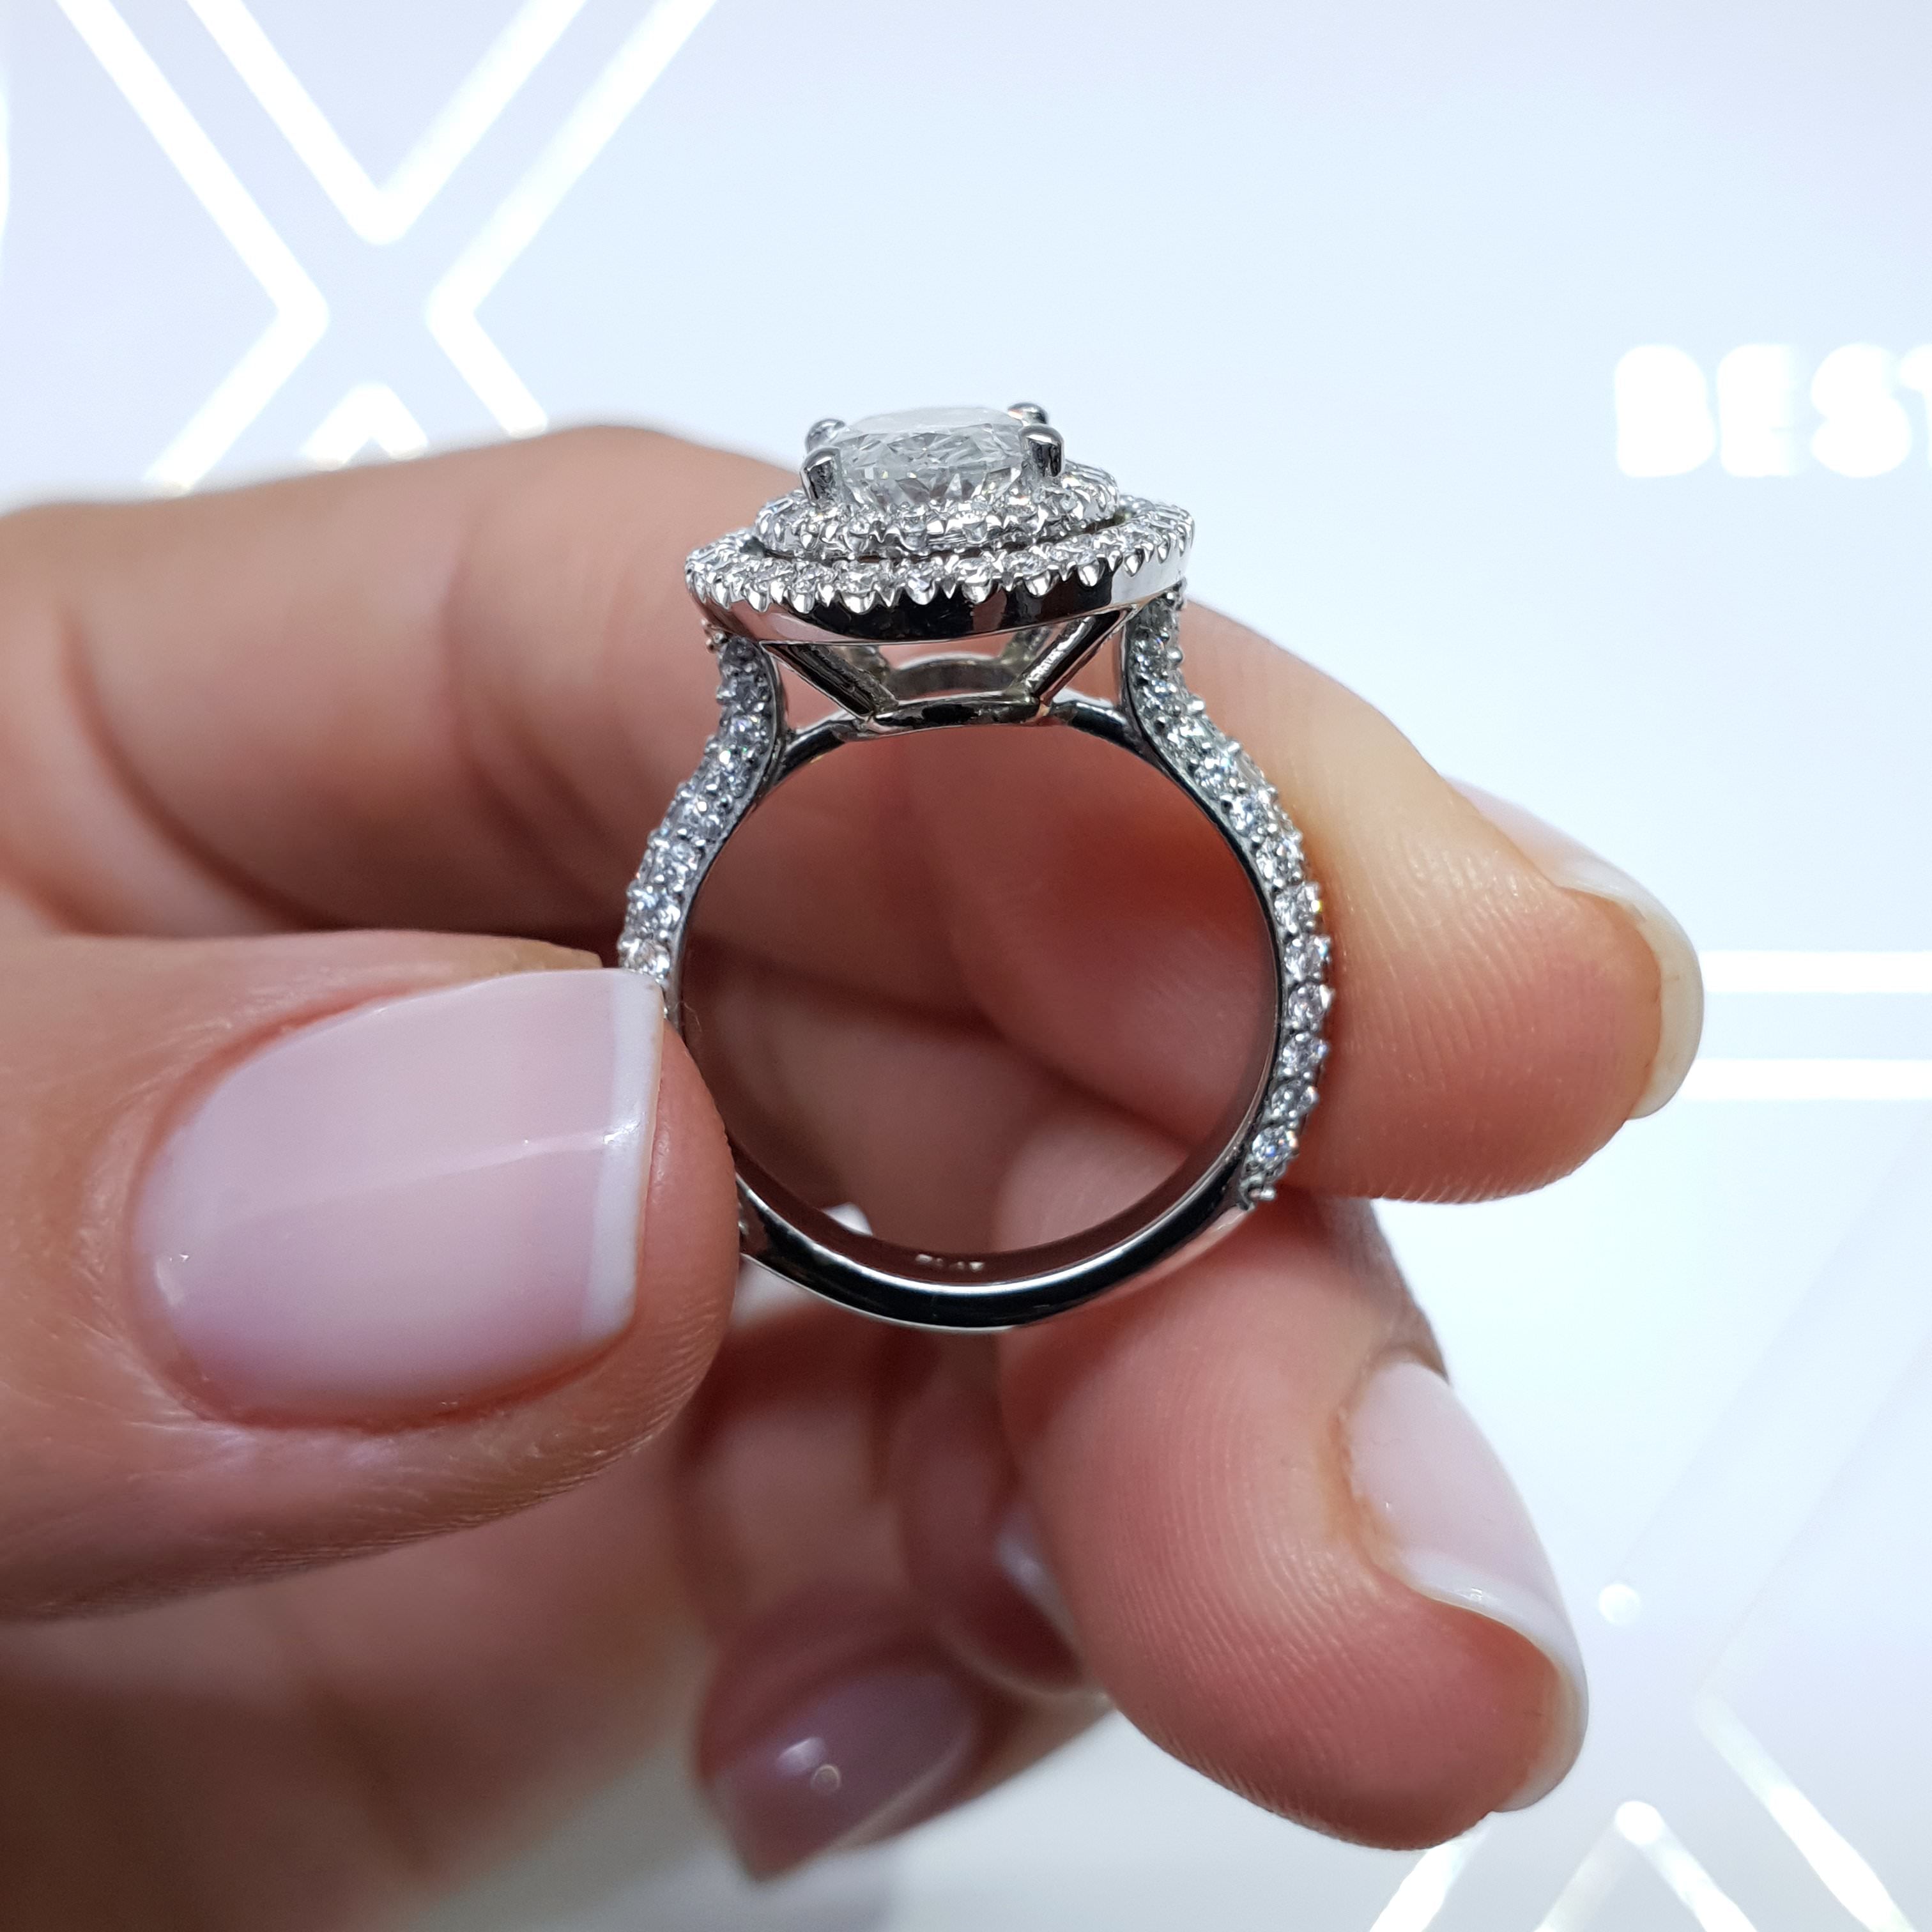 Nora Diamond Engagement Ring   (2.35 Carat) -18K White Gold